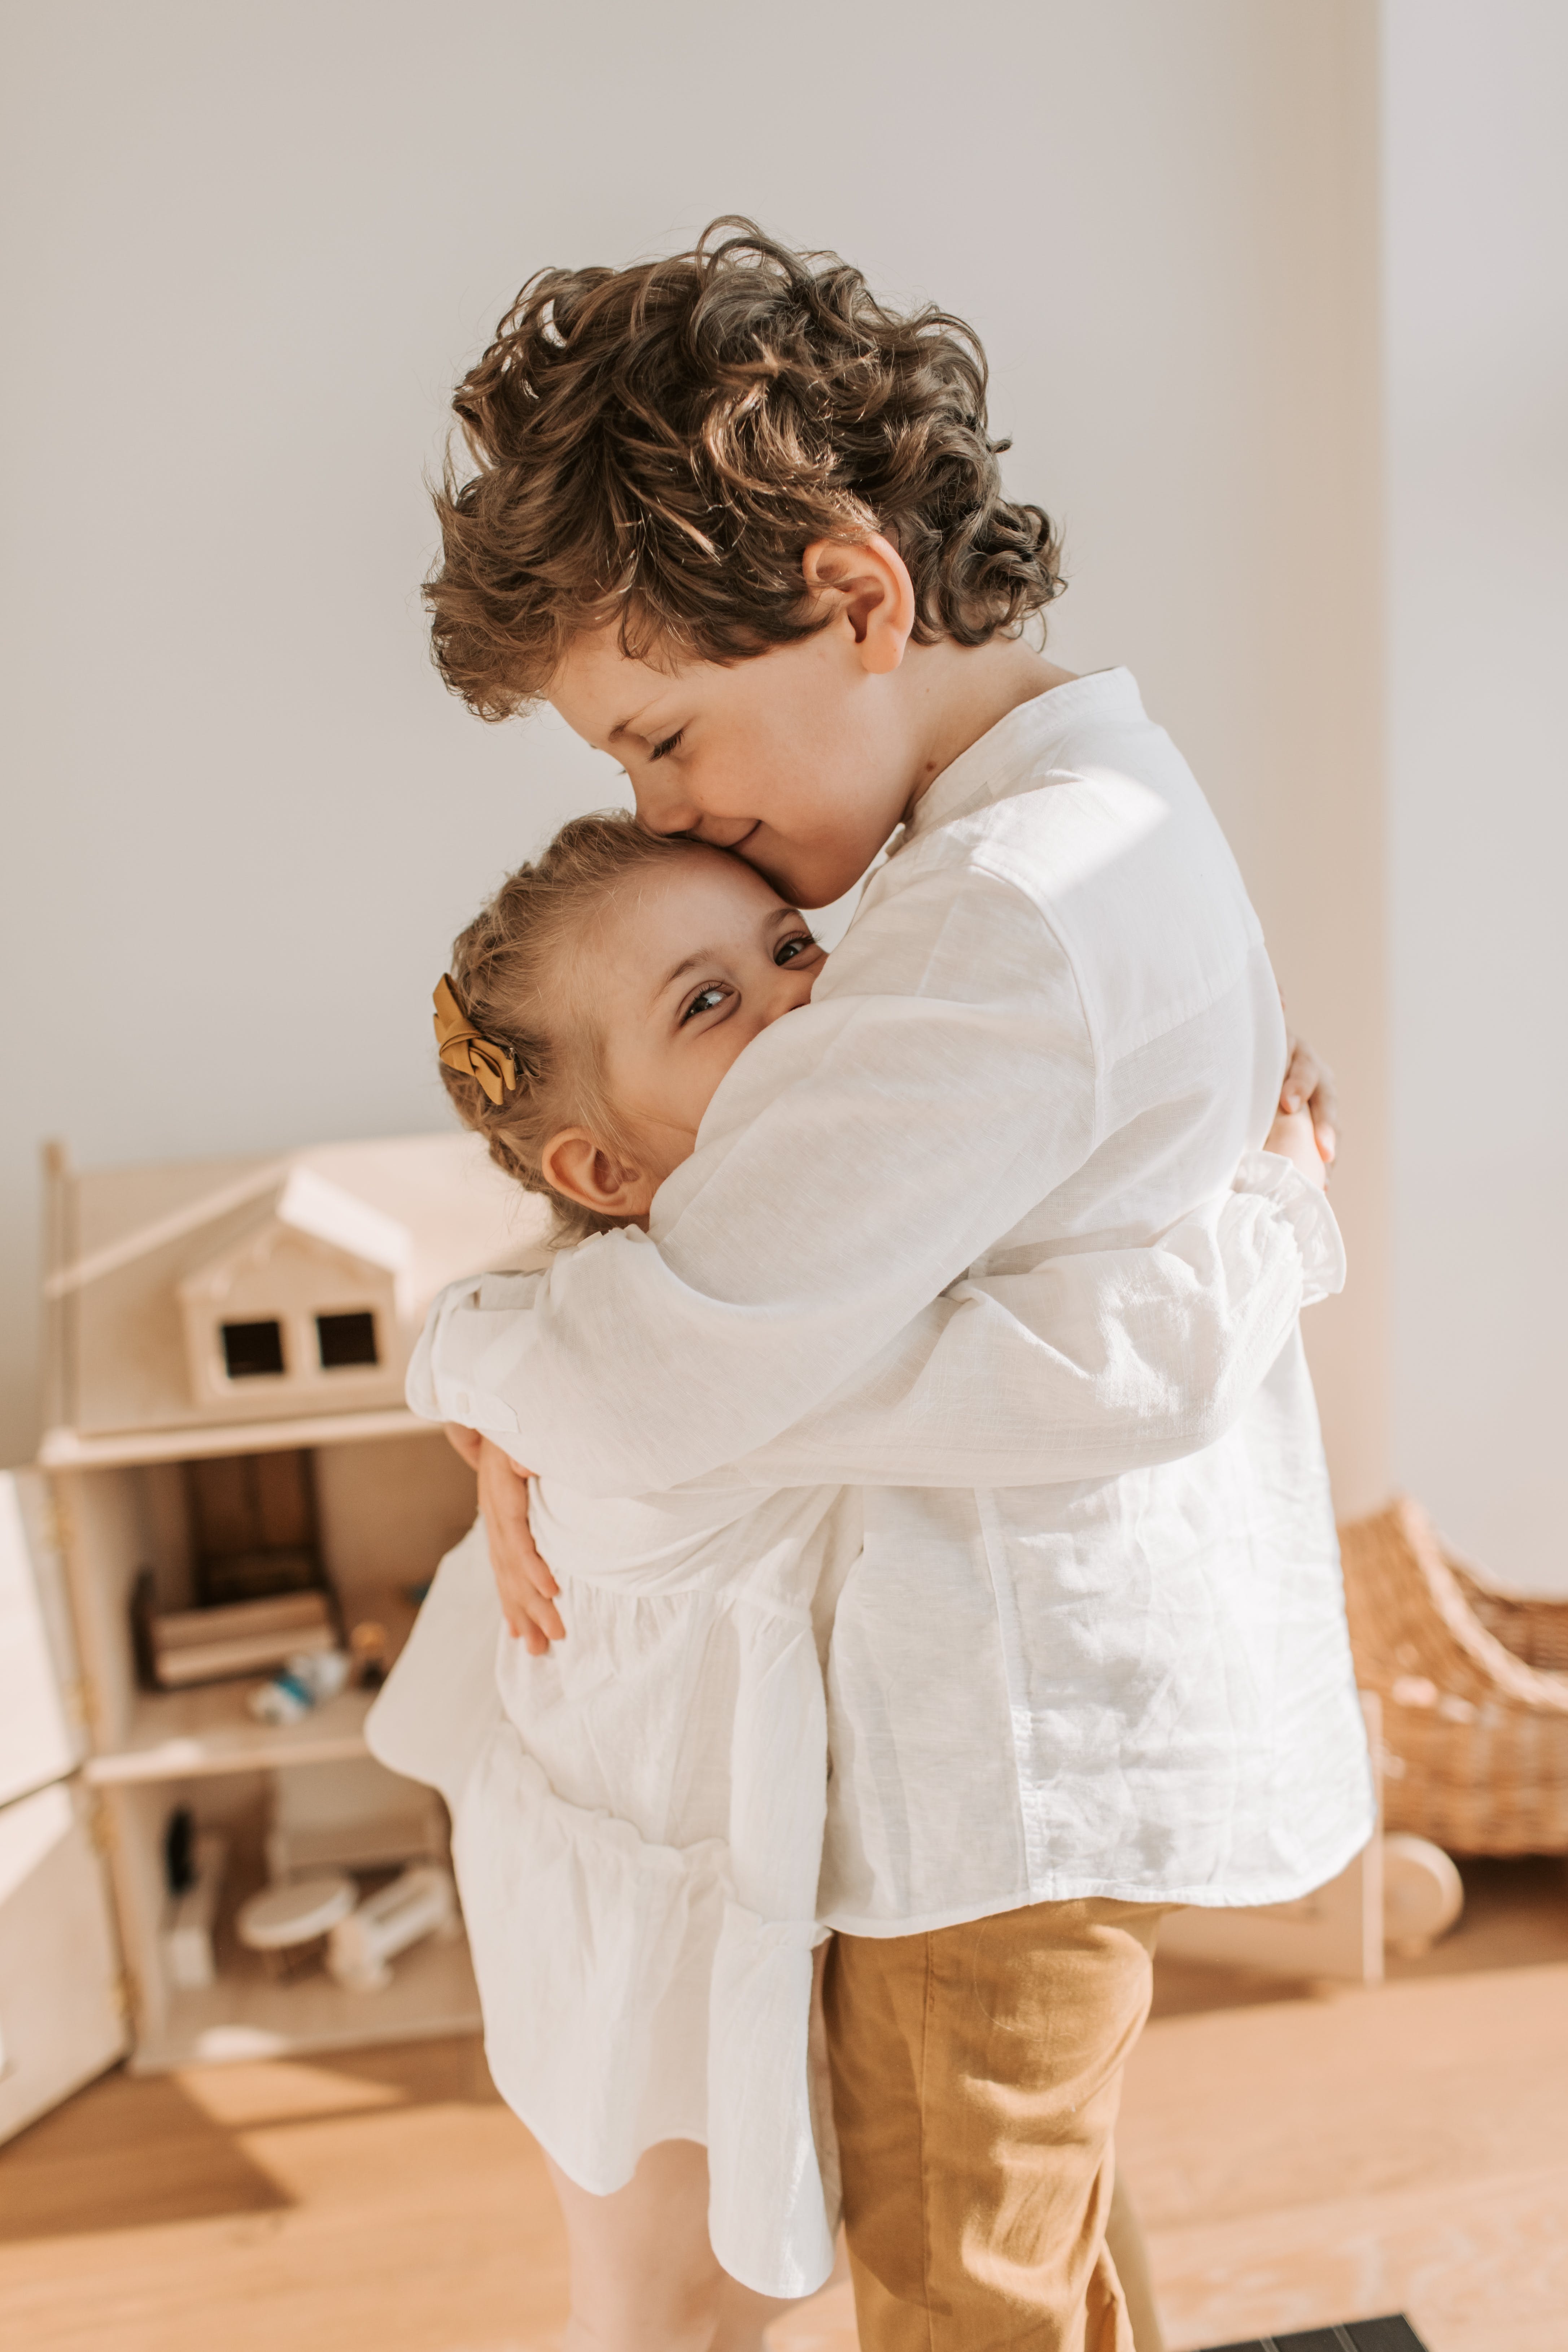 Kleiner Junge und Mädchen, die sich umarmen | Quelle: Pexels